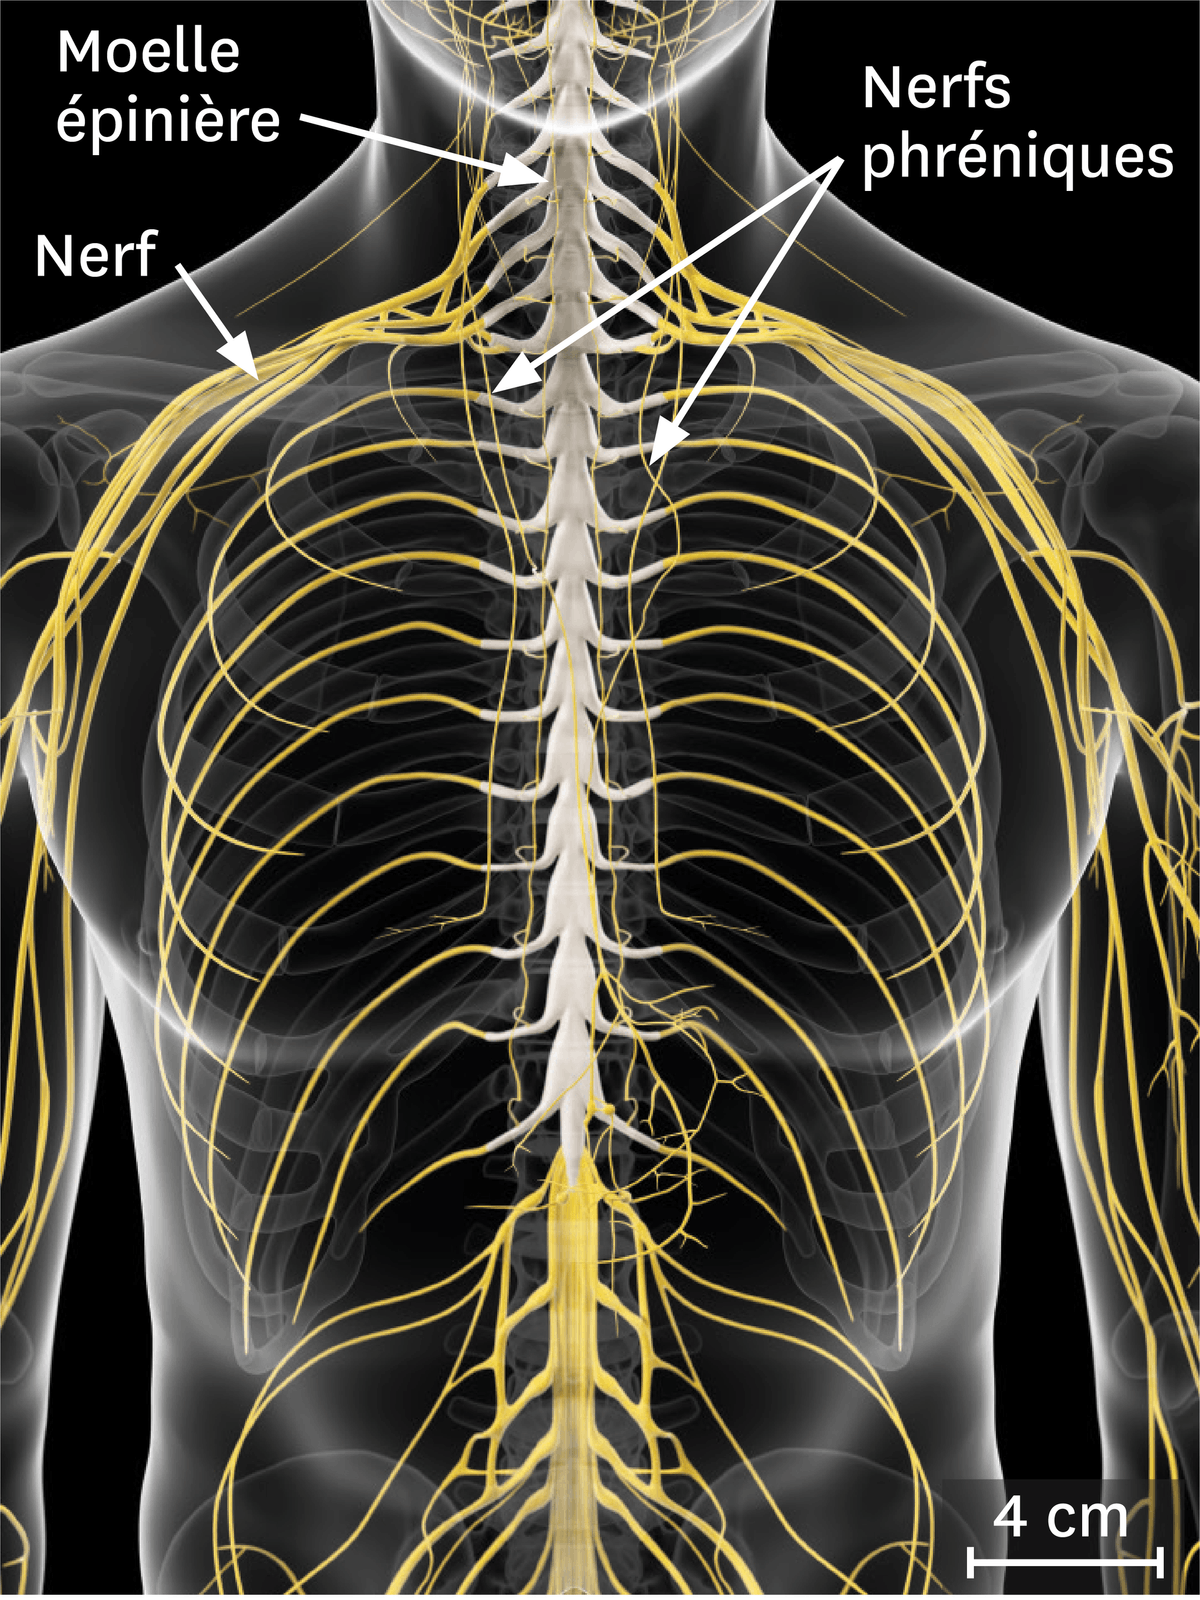 La relation entre le système nerveux et l'appareil respiratoire.